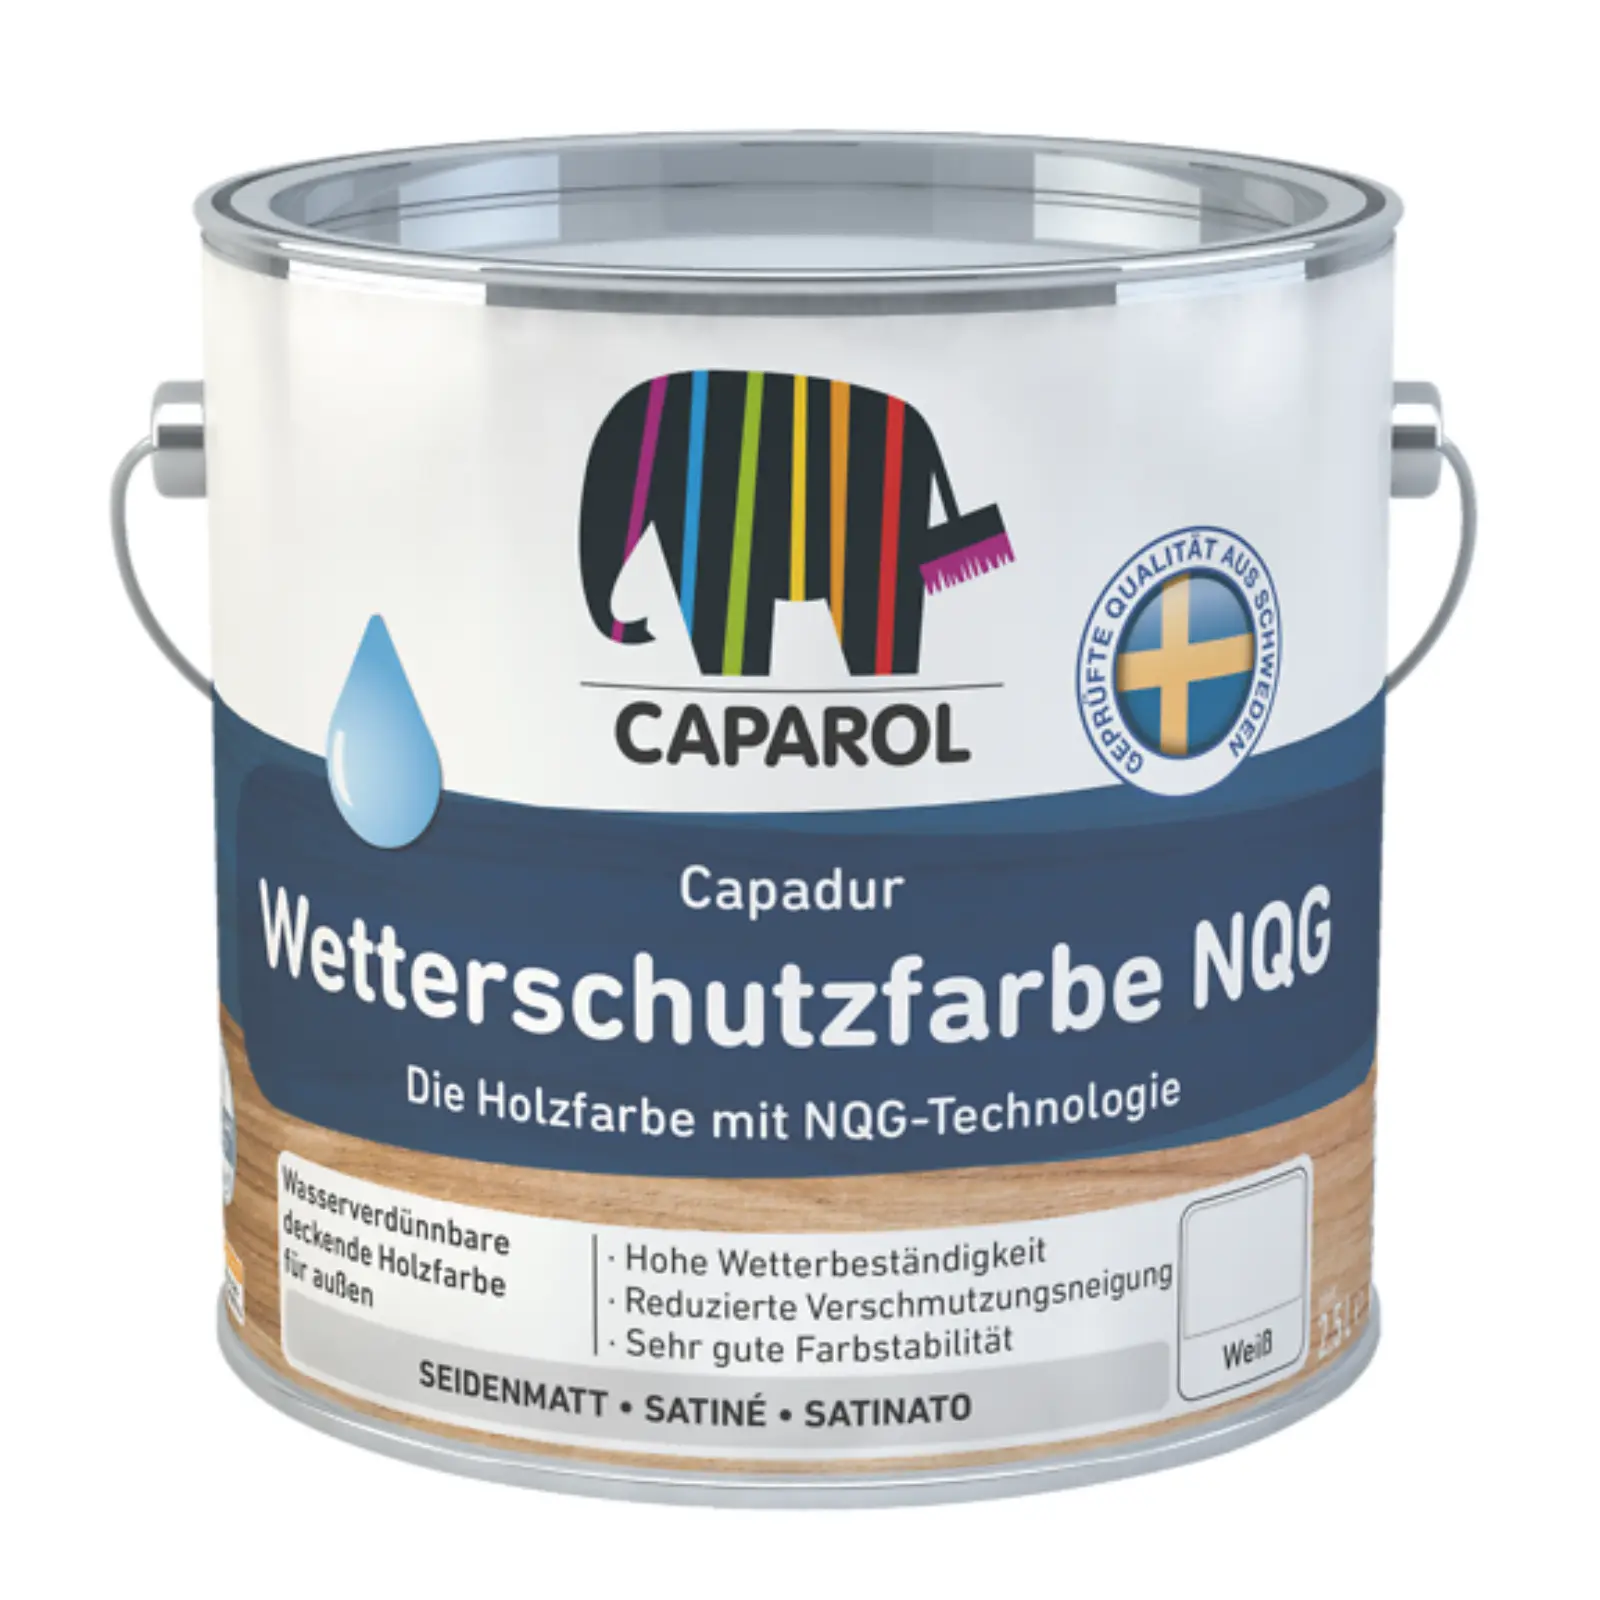 Caparol Capadur Wetterschutzfarbe NQG, weiss, 2,5 Ltr